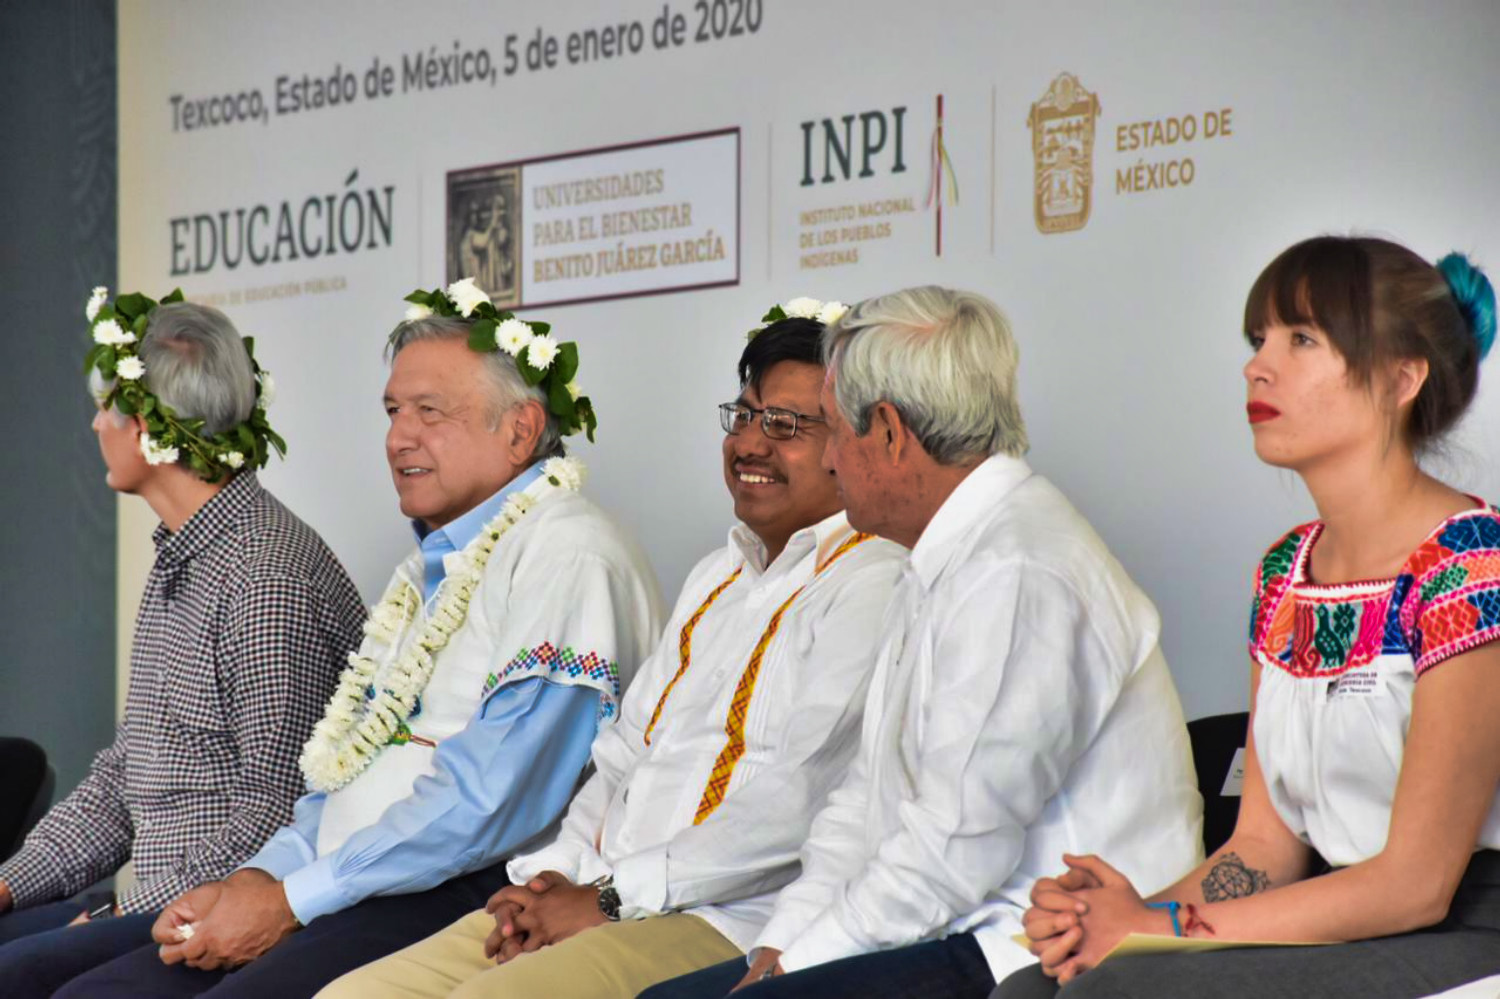 Educación indígena pluricultural, un hecho inédito en la historia de México: INPI.